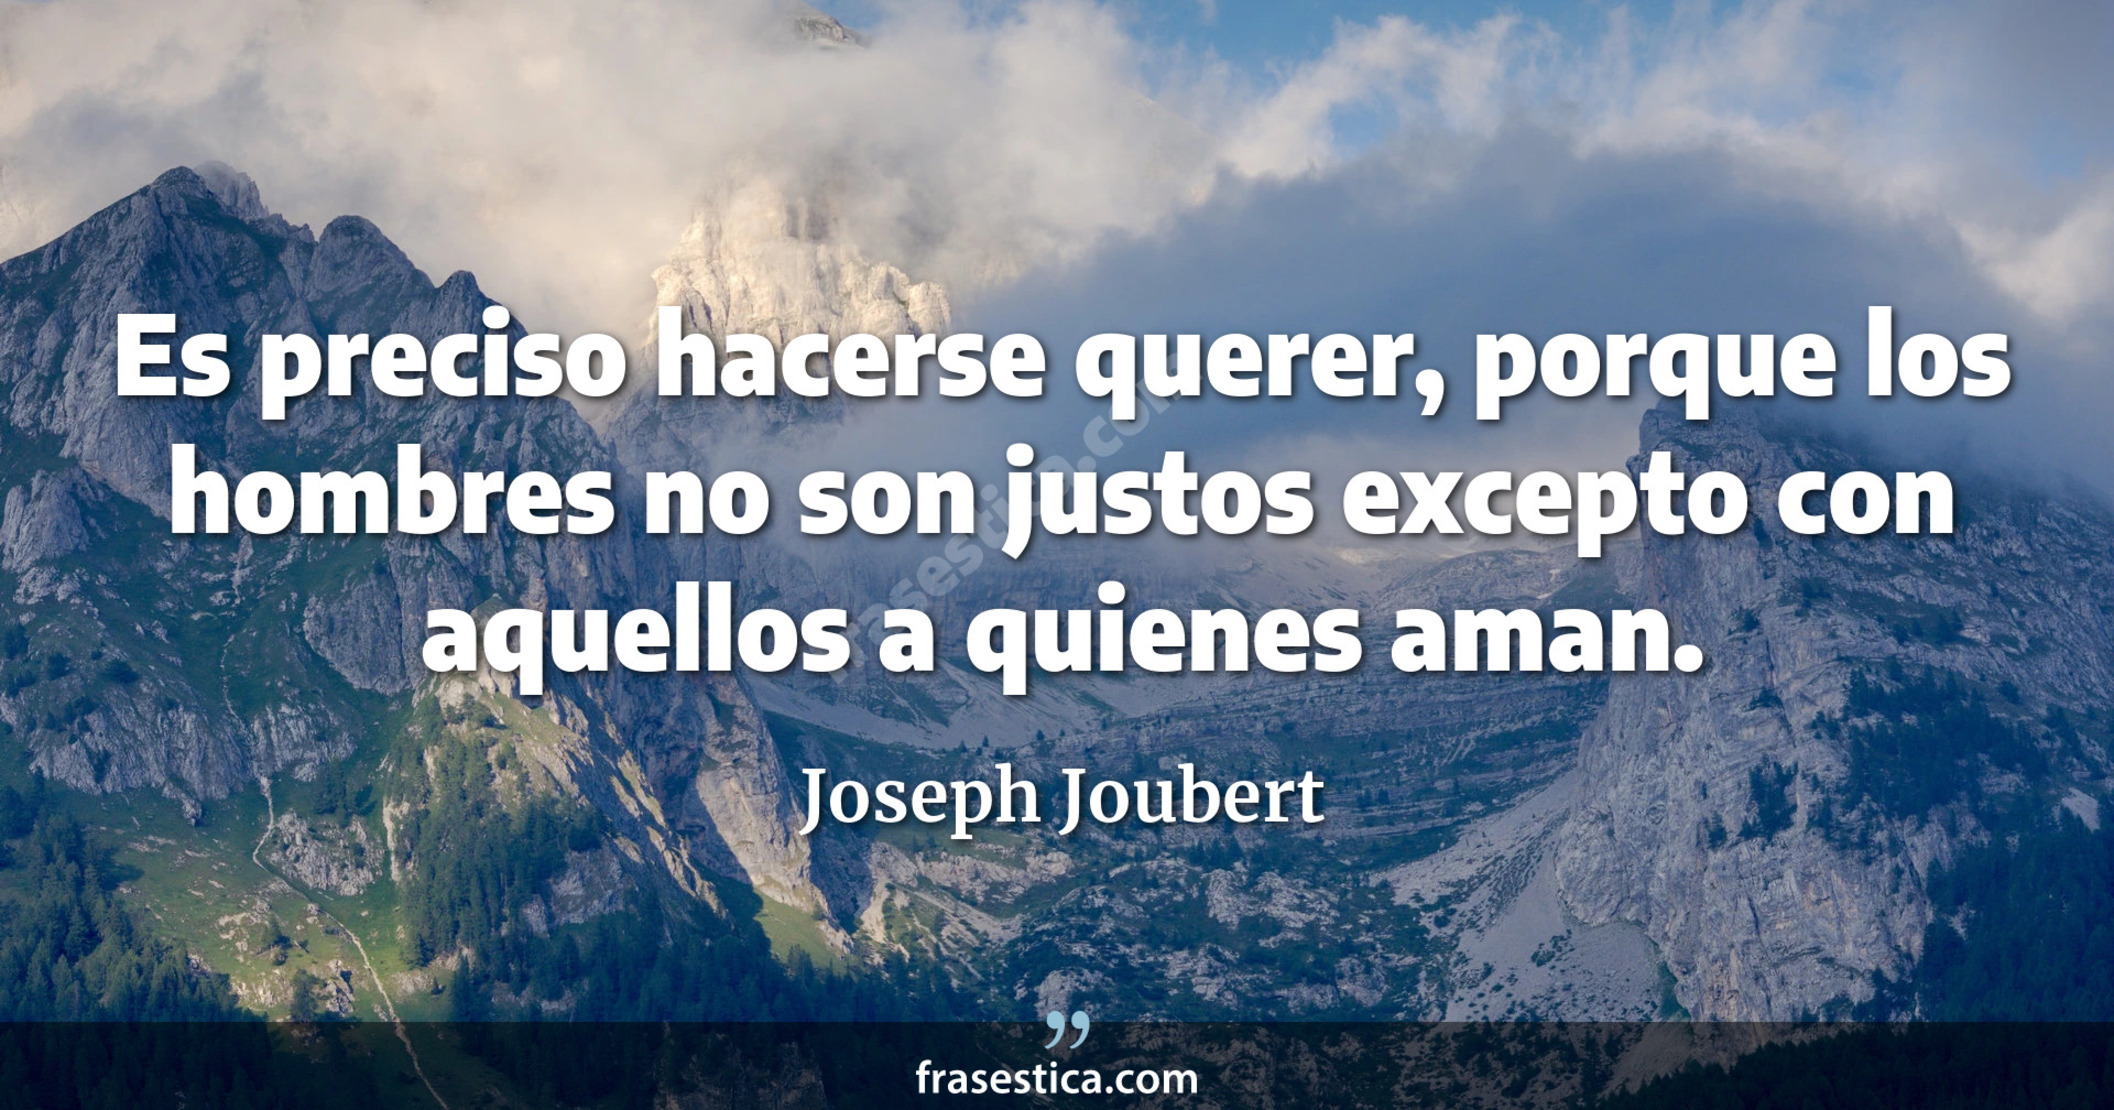 Es preciso hacerse querer, porque los hombres no son justos excepto con aquellos a quienes aman. - Joseph Joubert